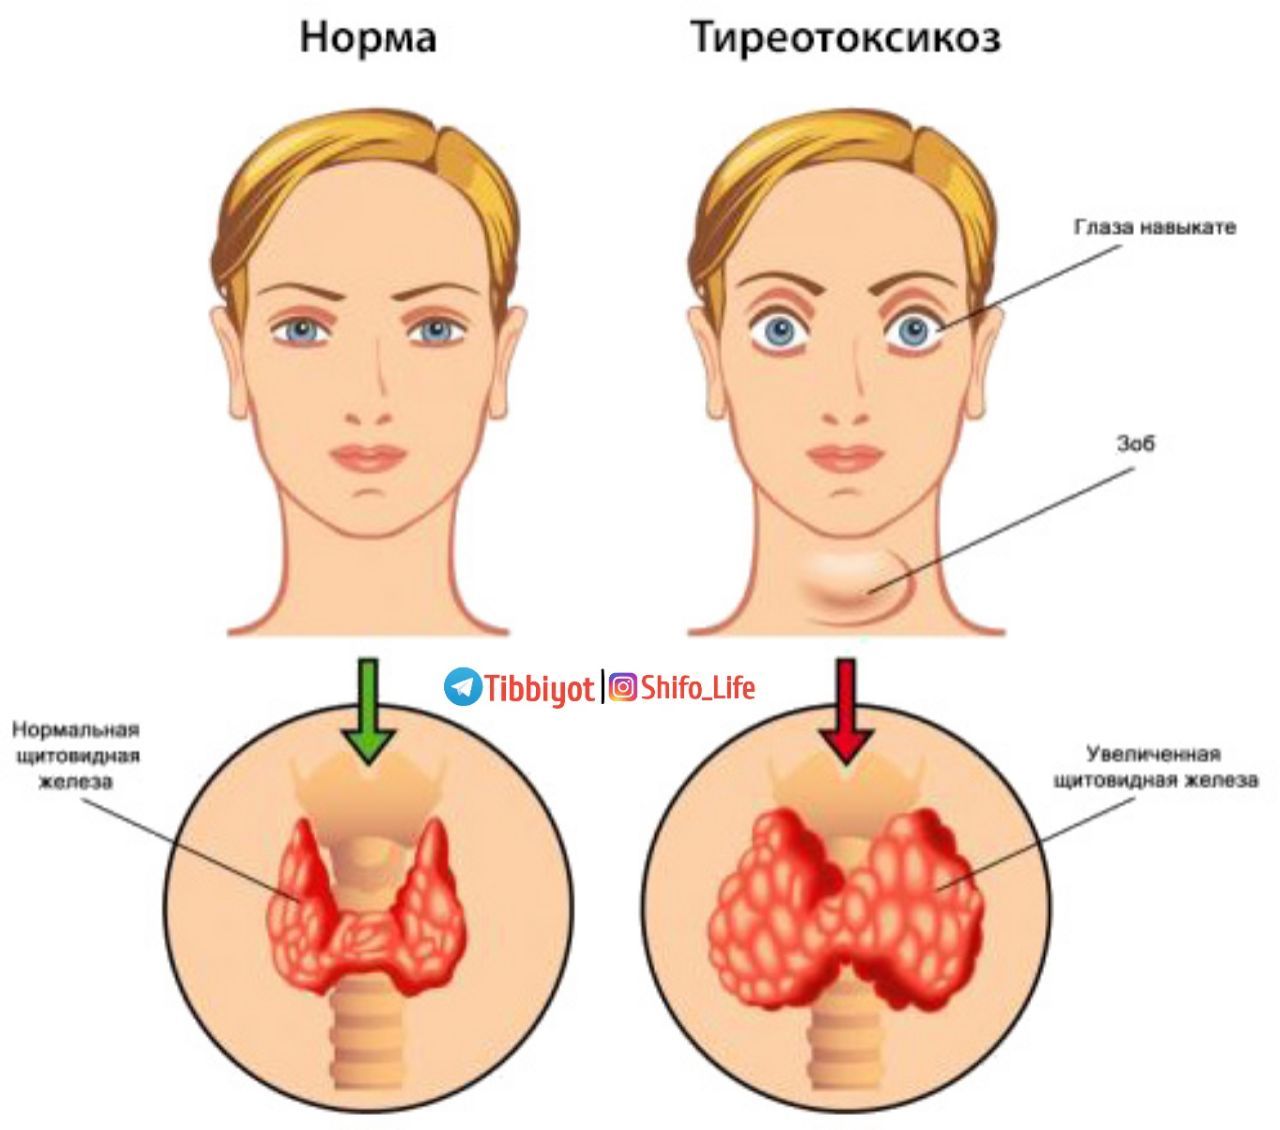 3 гипотиреоз. Гиперфункция щитовидной железы, базедова болезнь. Заболевания щитовидной железы (гипертиреоз, тиреотоксикоз).. Гиперфункция щитовидной железы (гипертиреоз). Тиреотоксикоз гиперфункция щитовидной железы.